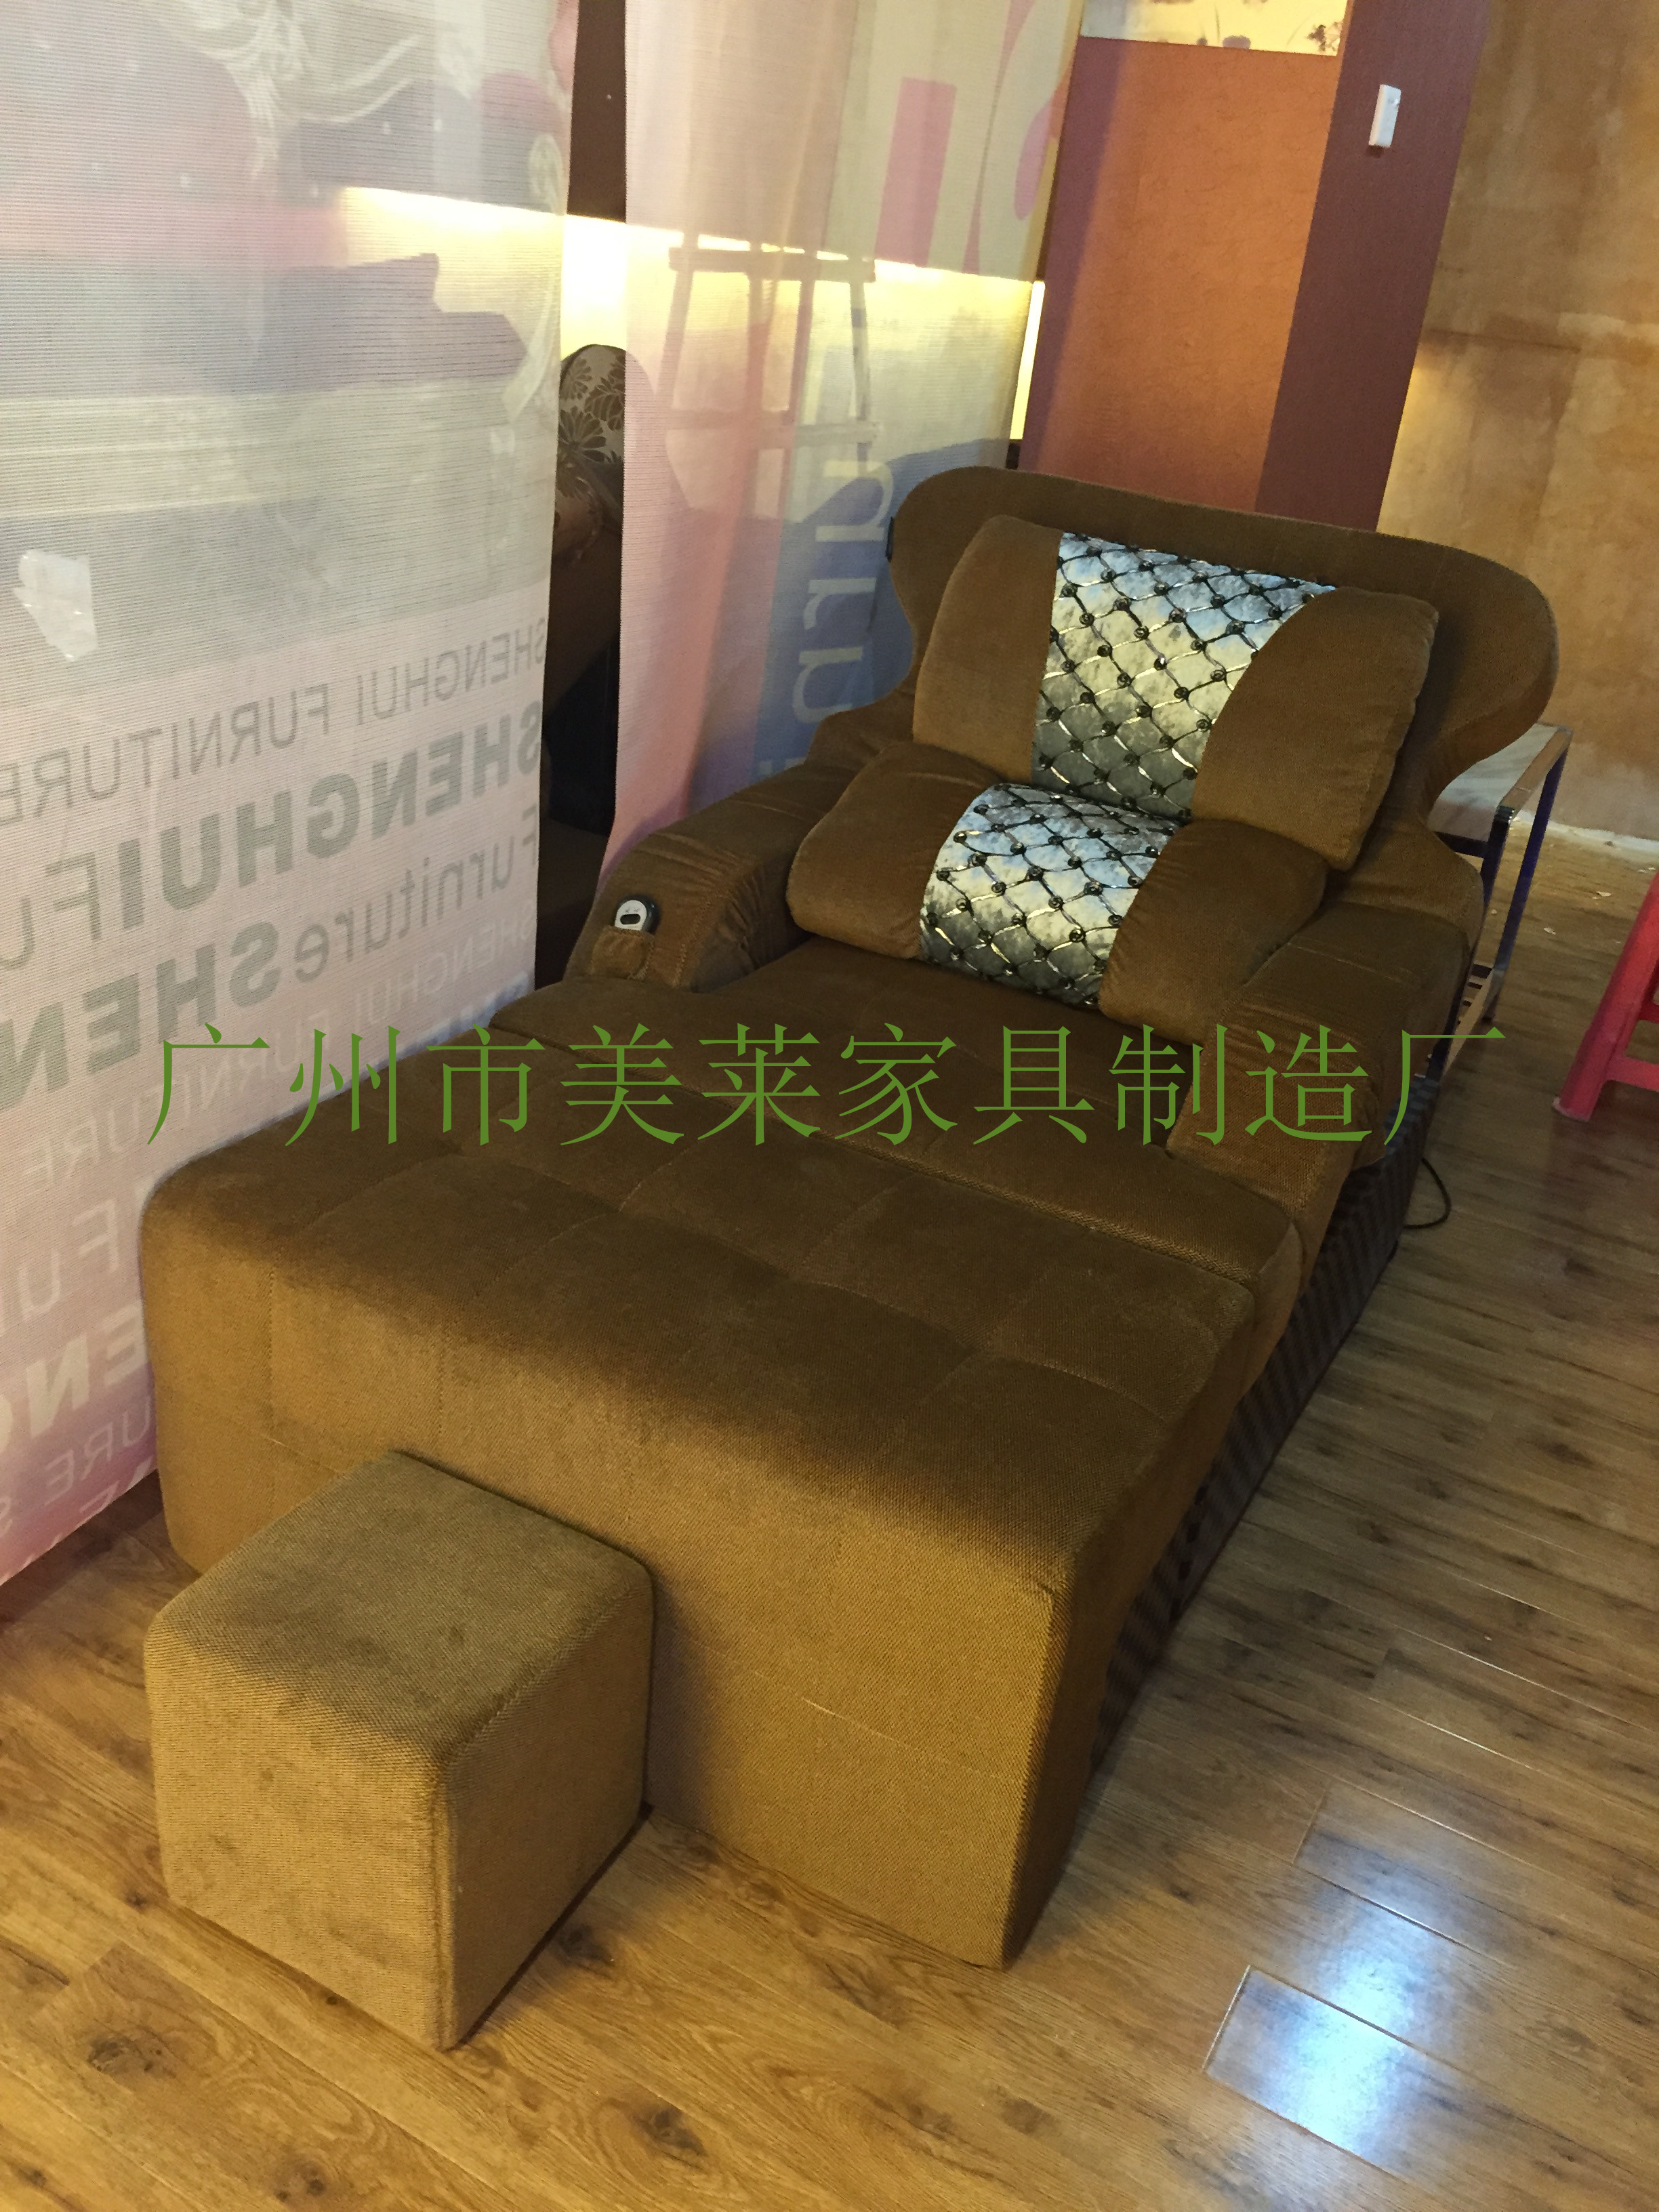 供应美莱新款沐足沙发，定做沐足沙发选择广州市美莱沐足沙发厂图片